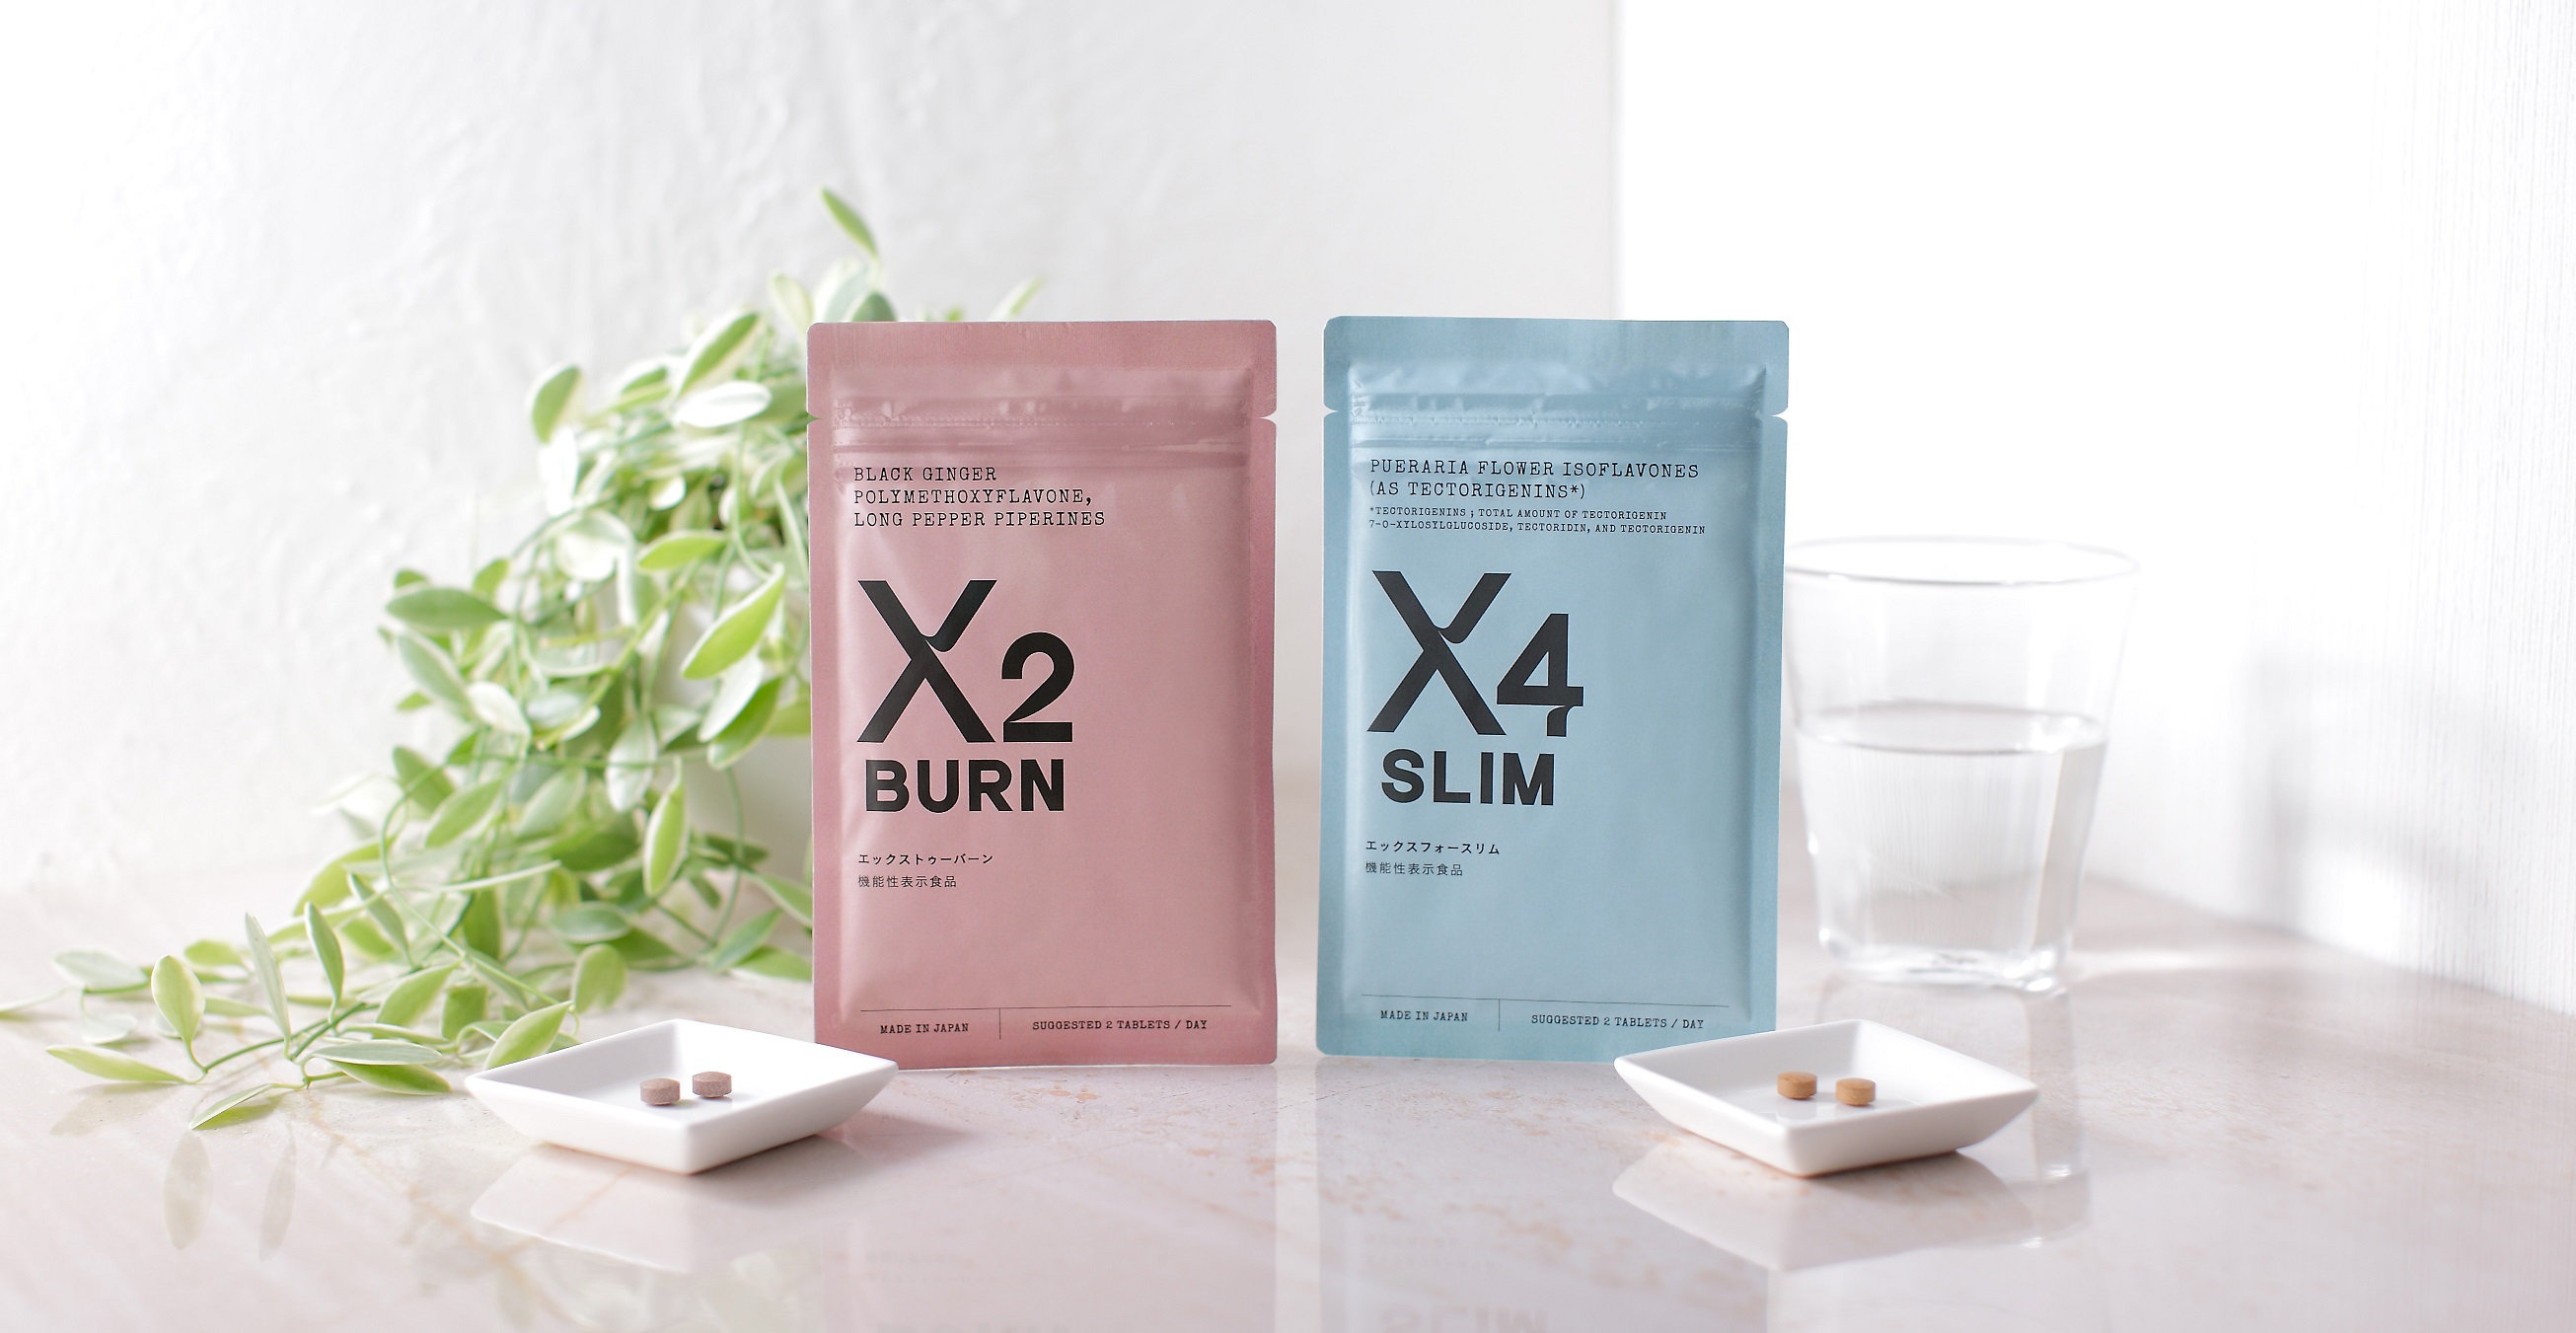 体脂肪低減サポート成分配合の「機能性表示食品」サプリメント「X2 BURN（エックストゥー バーン）」「X4 SLIM（エックスフォー スリム）」